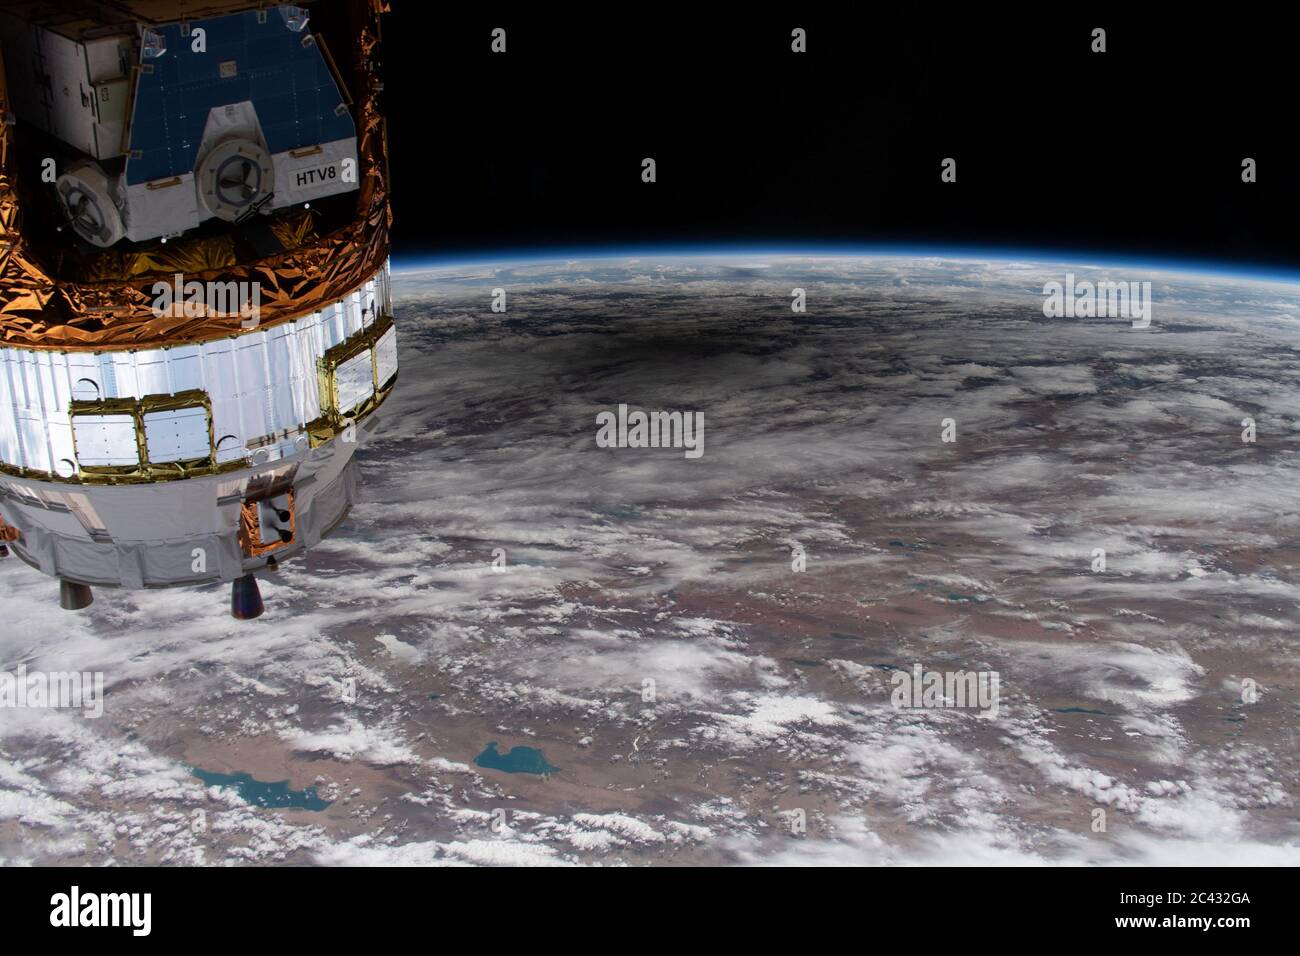 Washington, Stati Uniti. 23 Giugno 2020. La Stazione spaziale Internazionale stava orbitando sopra il Kazakistan e in Cina il 21 giugno 2020, quando questa immagine dell'eclissi solare che oscura una parte del continente asiatico è stata catturata da una telecamera esterna ad alta definizione. In primo piano a sinistra, è il veicolo di trasferimento H-II-9 dal Giappone. Crediti NASA/UPI: Notizie dal vivo UPI/Alamy Foto Stock